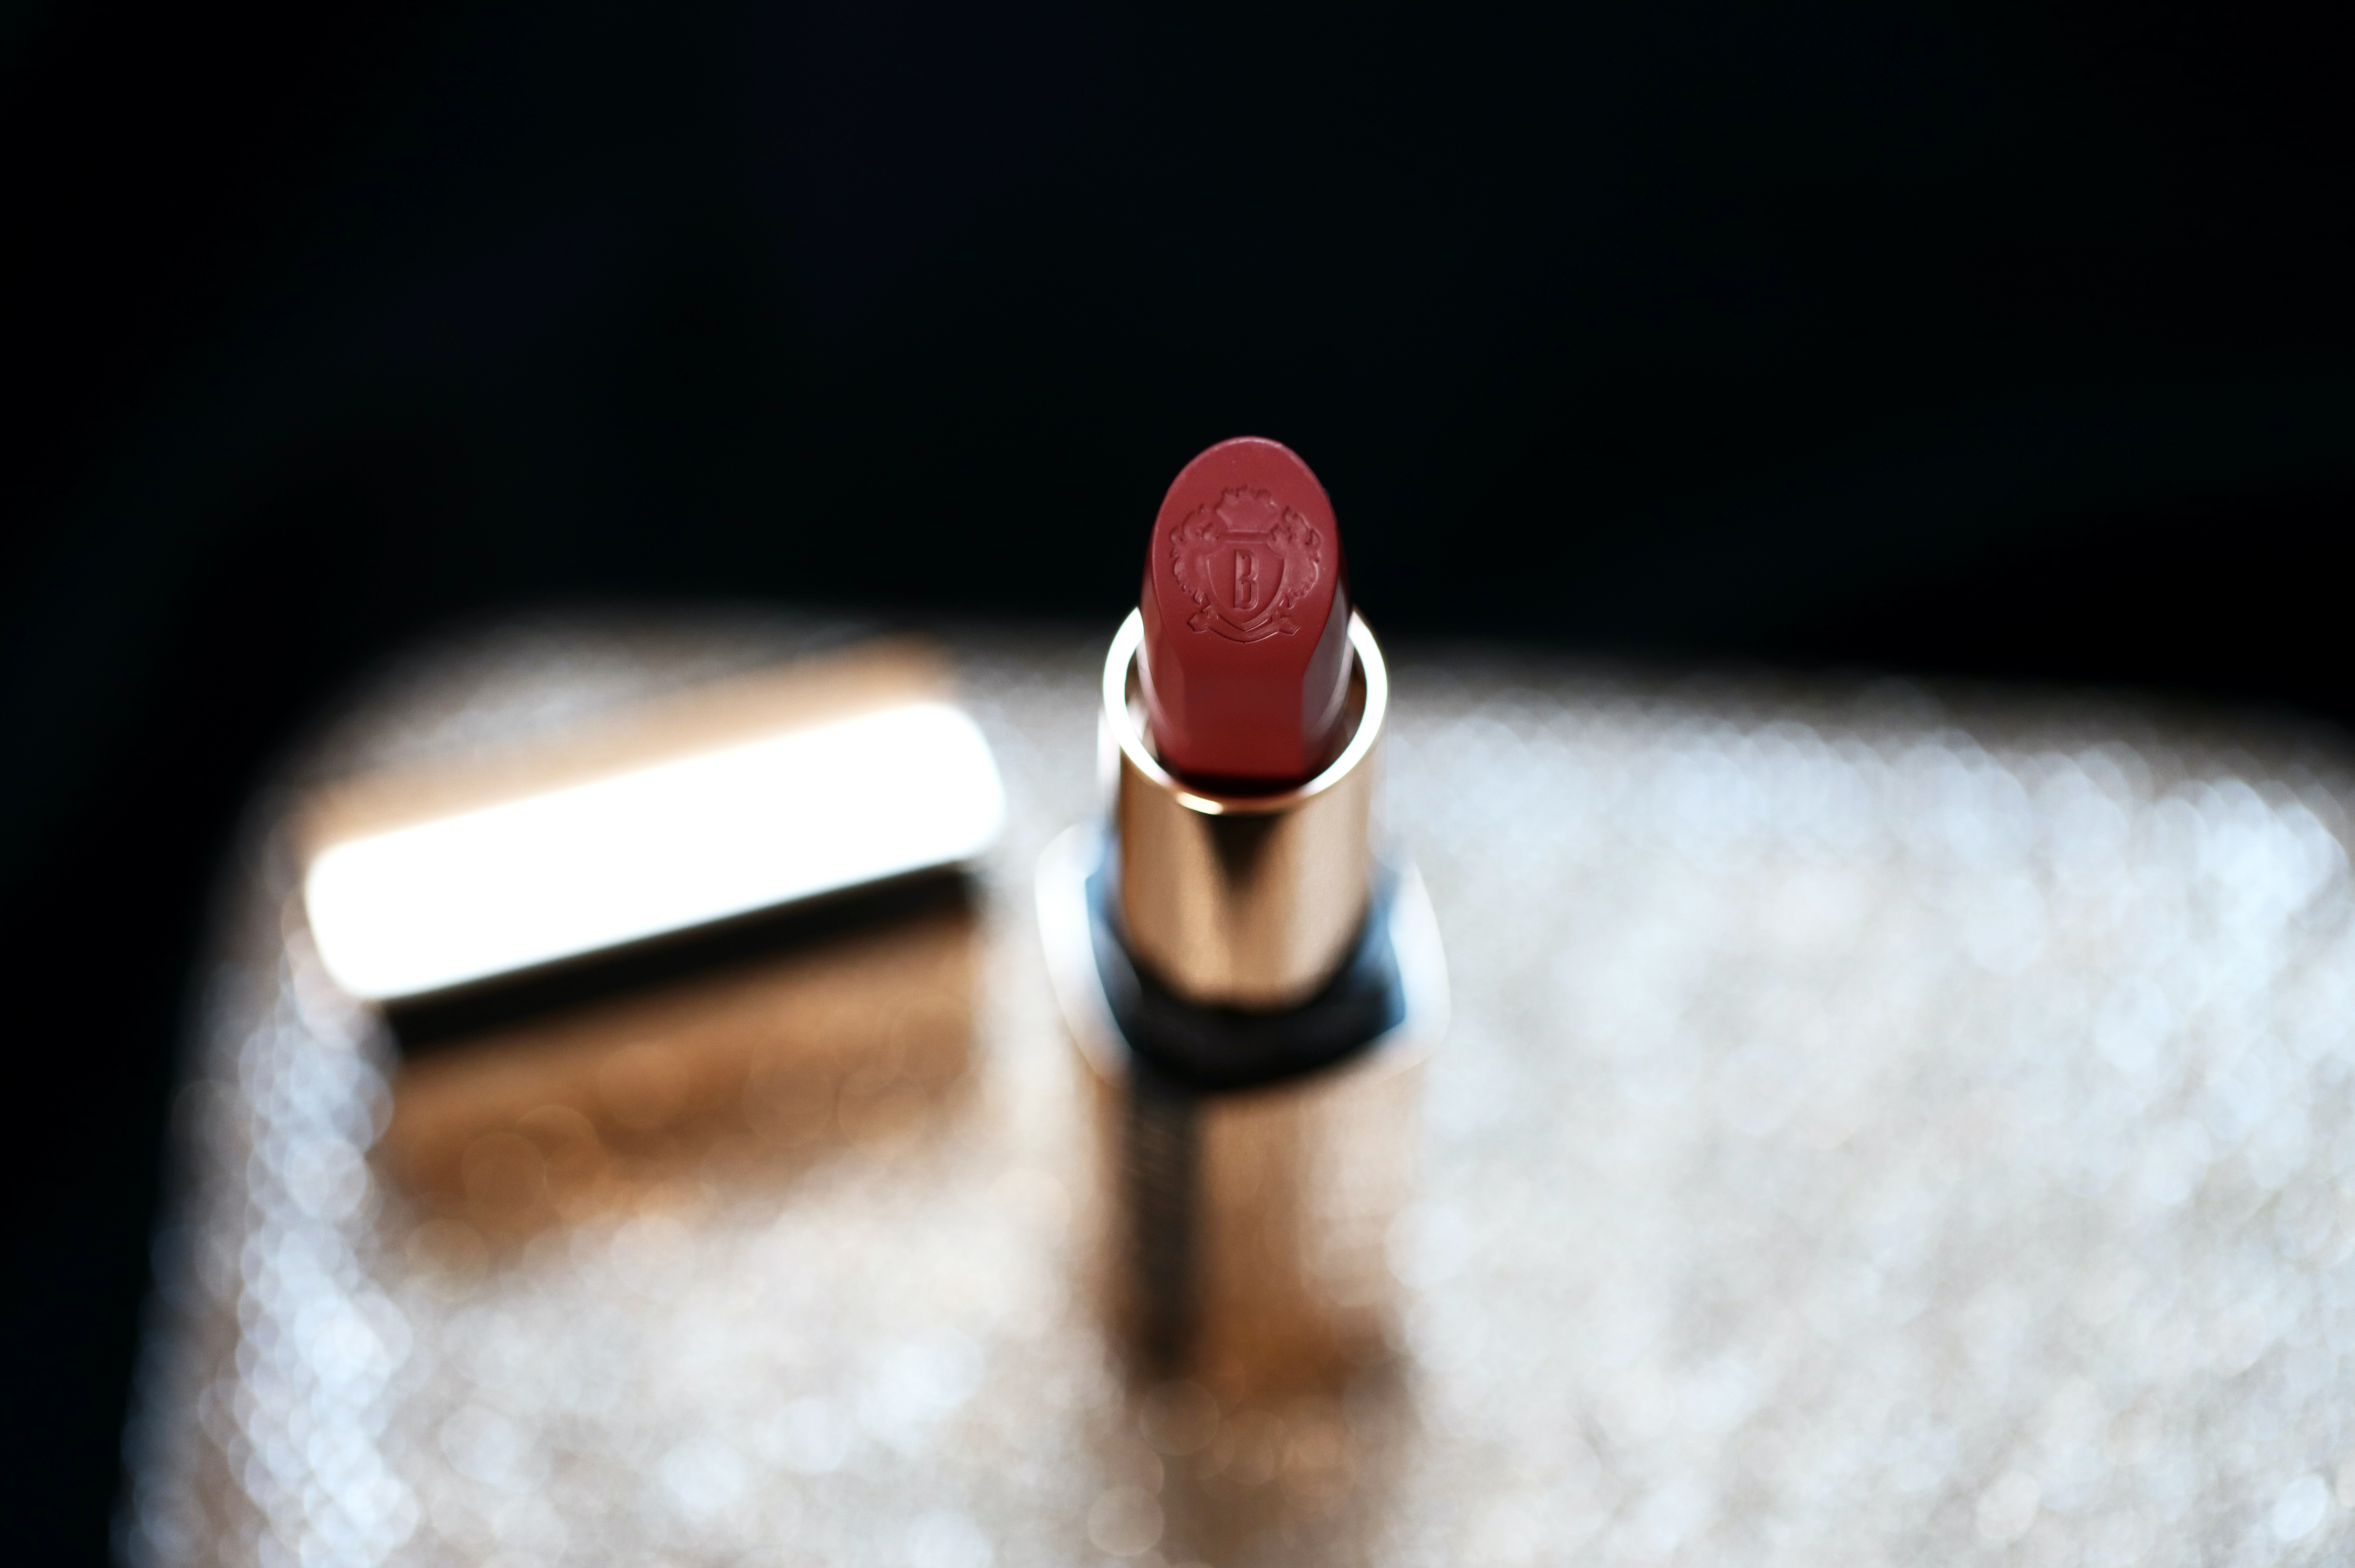 Bobbi Brown Luxe Lipstick